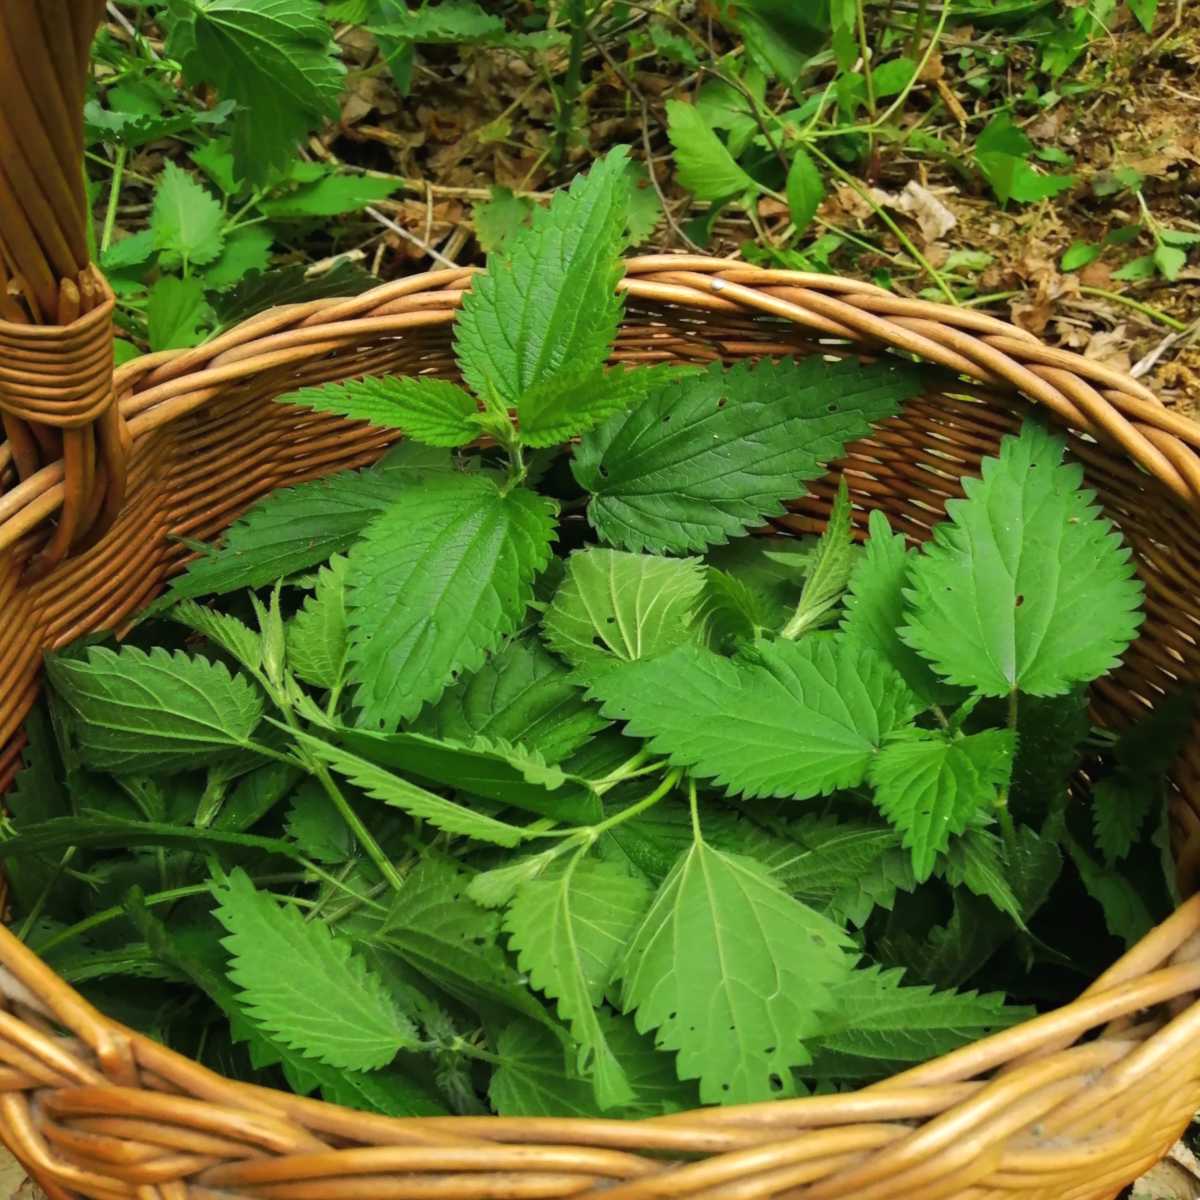 Nettle leaves in a wicker basket